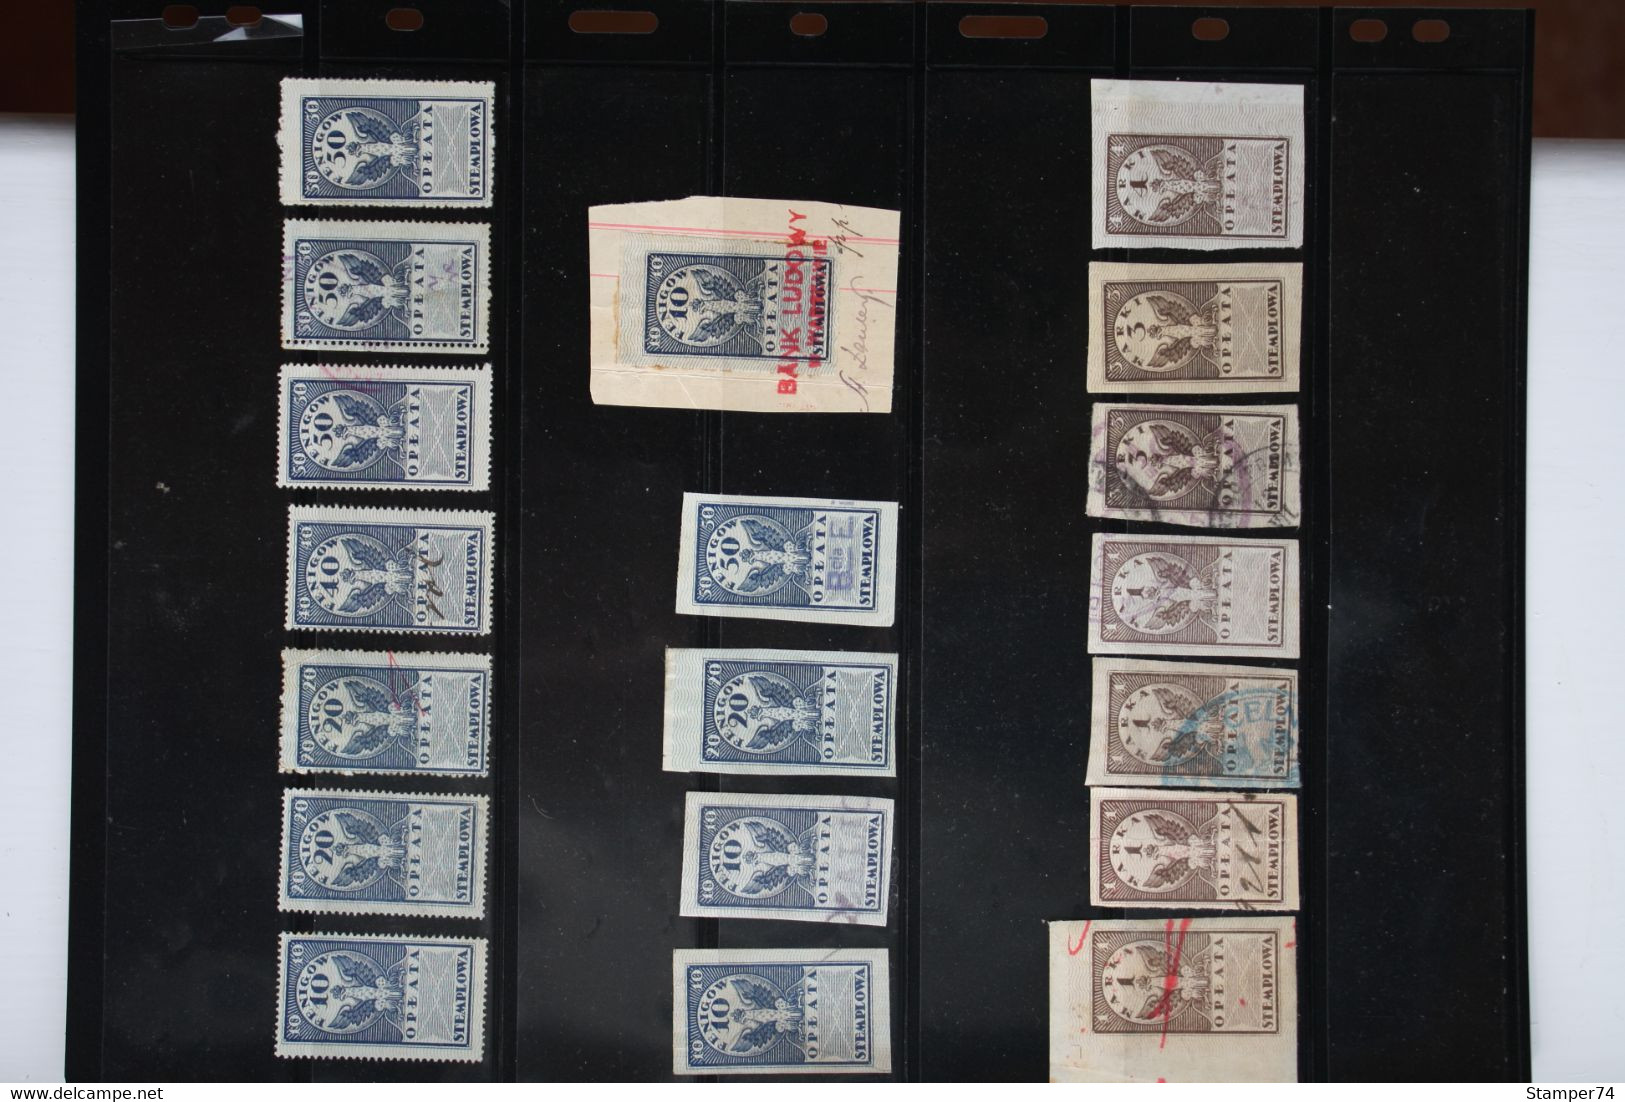 1920 Poland Revenue Stamps - Steuermarken